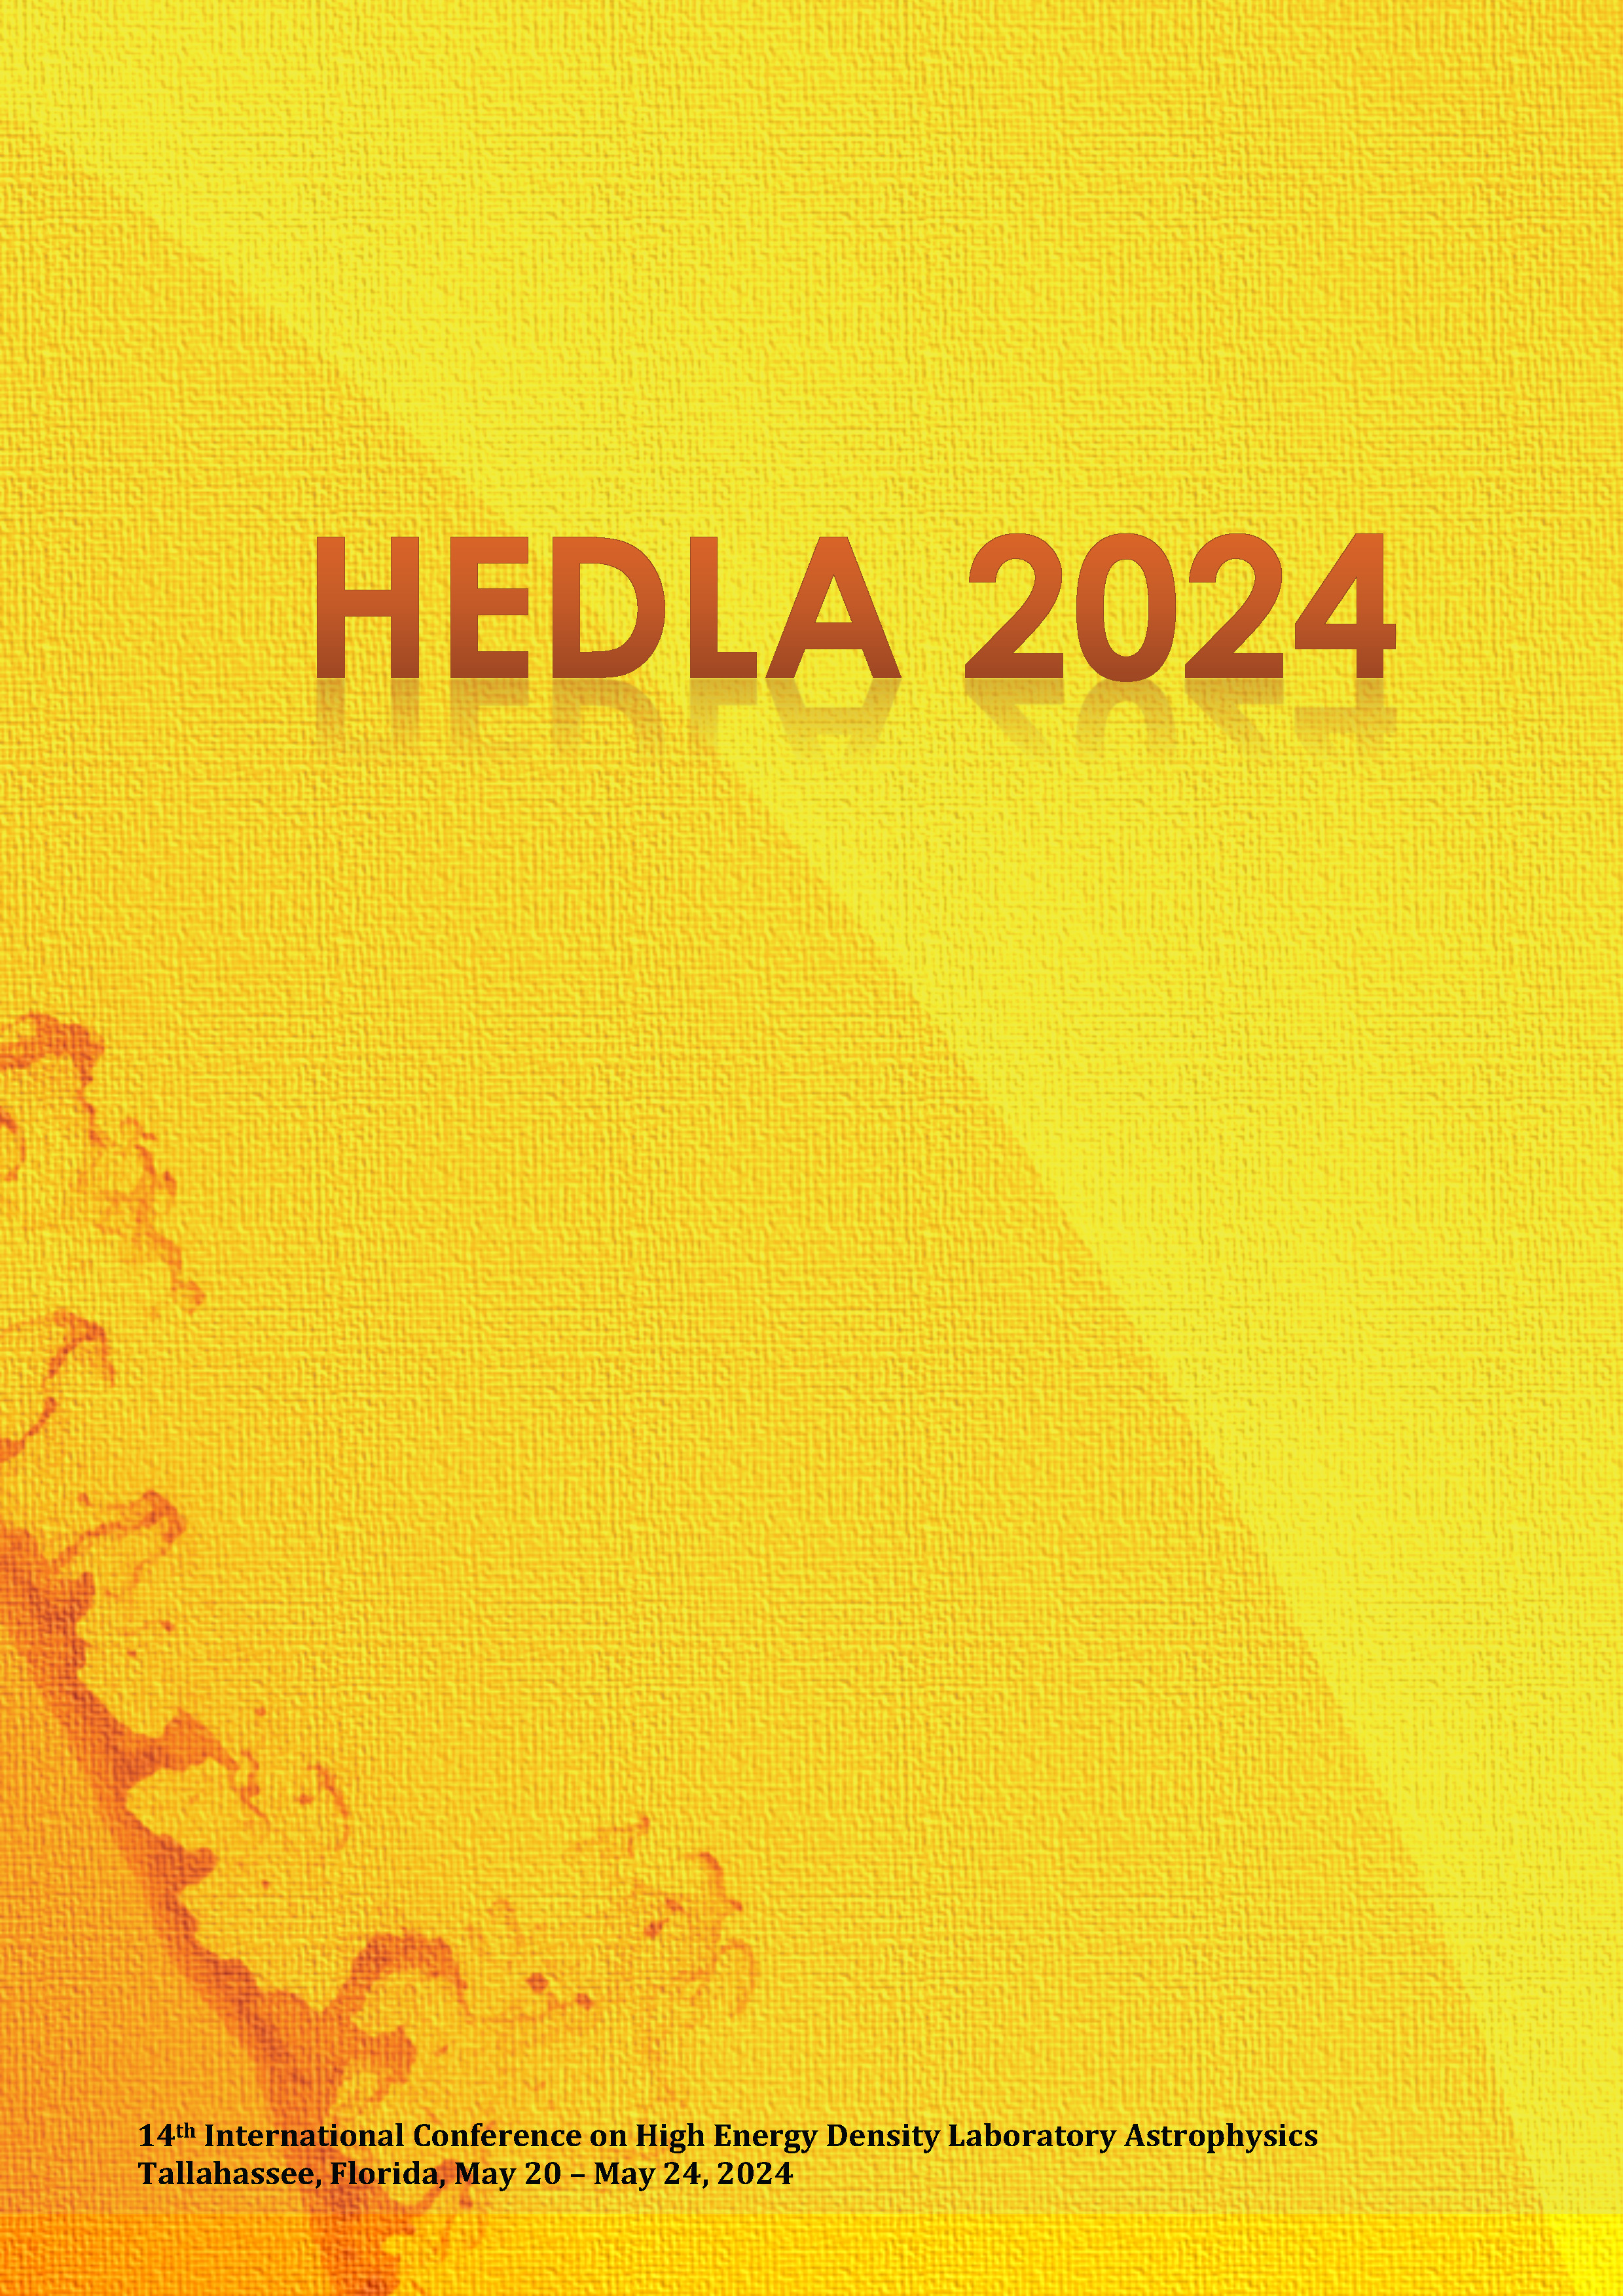 HEDLA2024 booklet